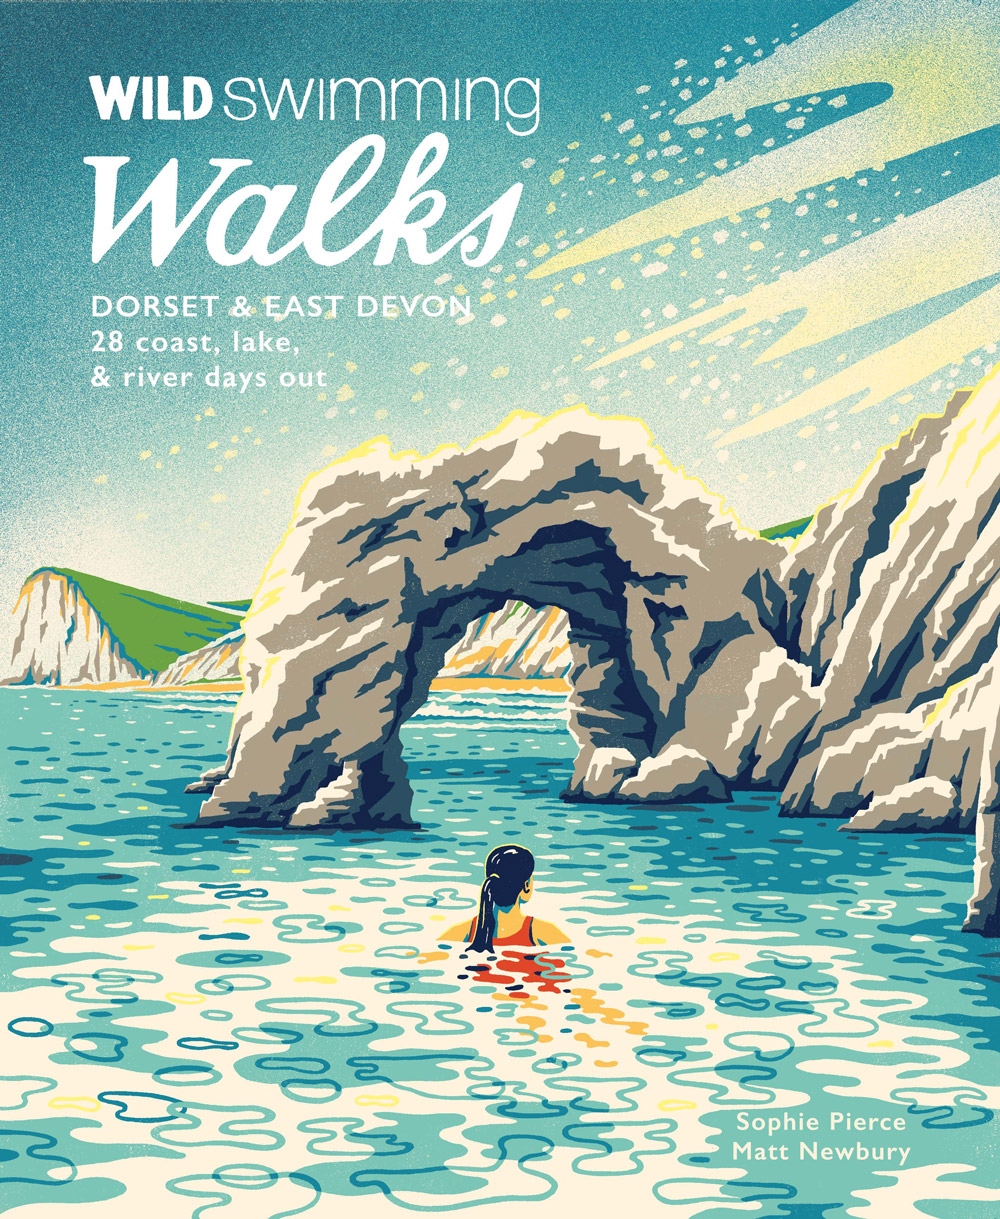 Wild Swimming Walks by Sophie Pierce and Matt Newbury (Wild Things Publishing)